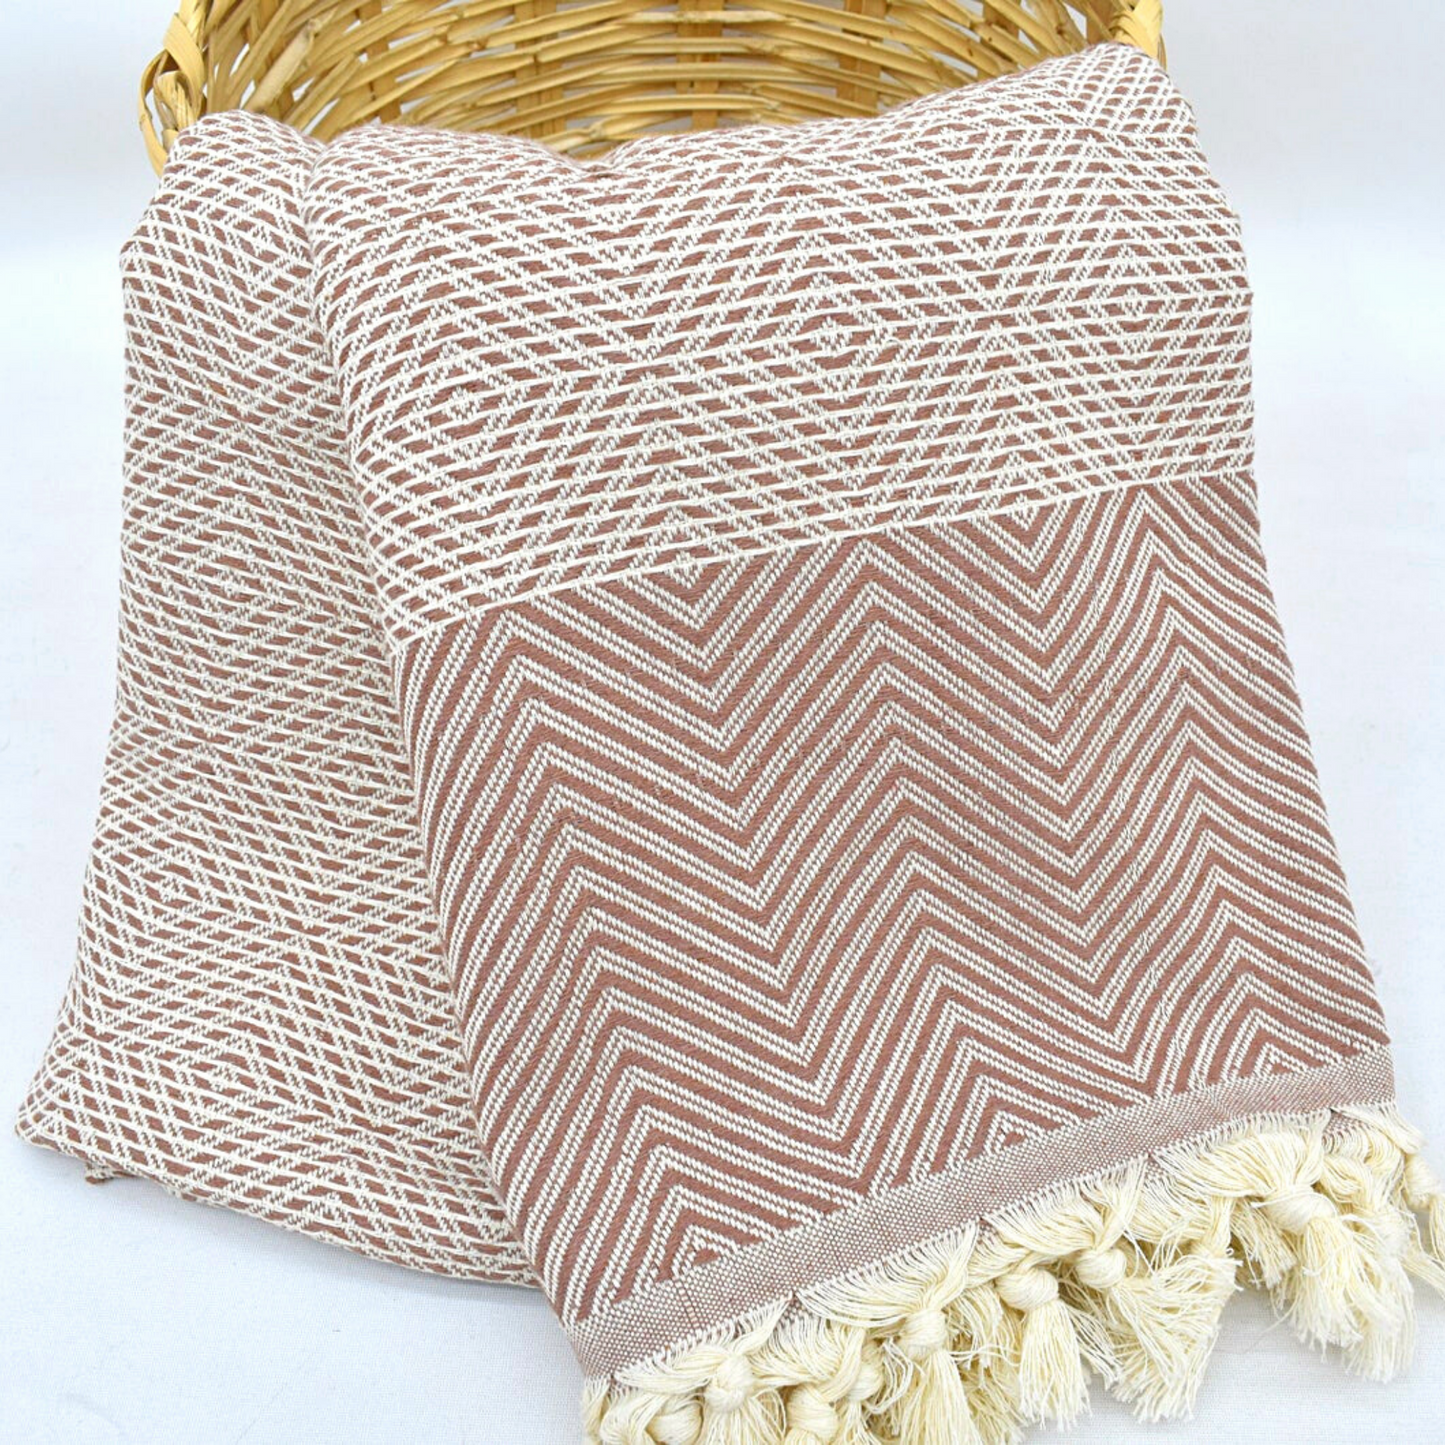 CINNAMON brown SULTAN Turkish Blanket in a basket